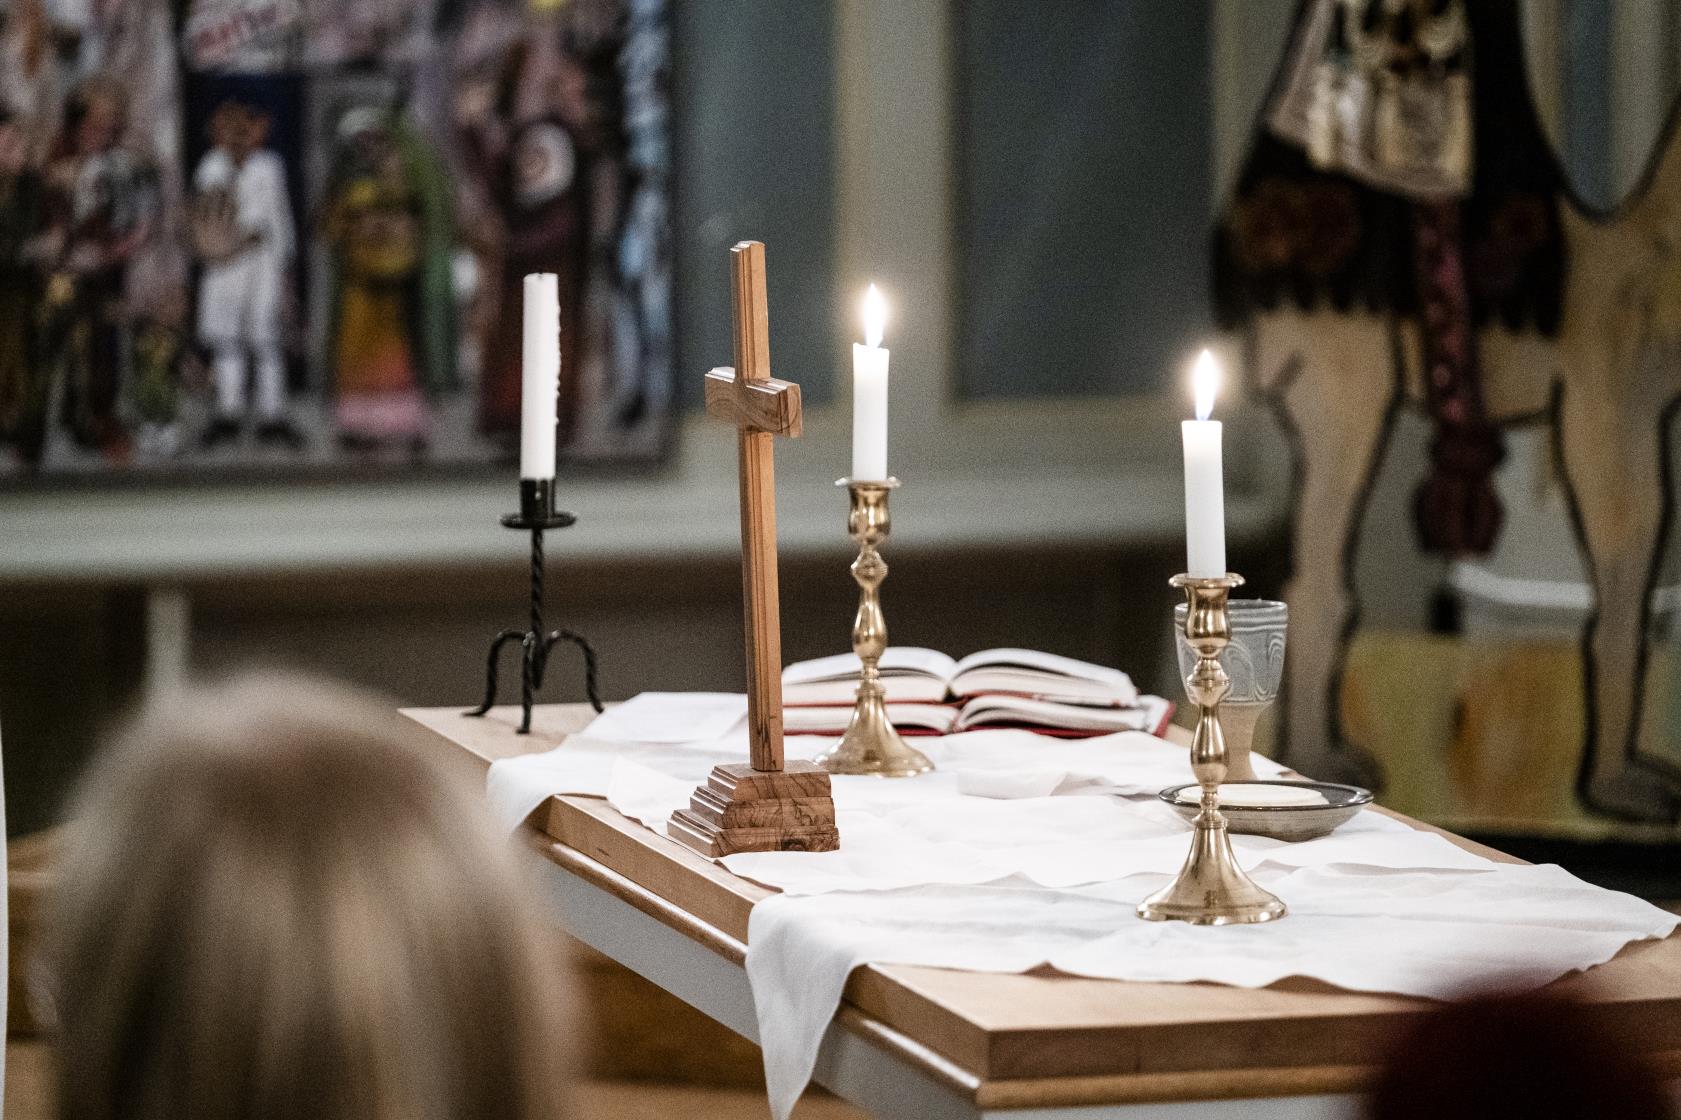 Ett litet träkors och tre ljusstakar med tända ljus står på ett altare.